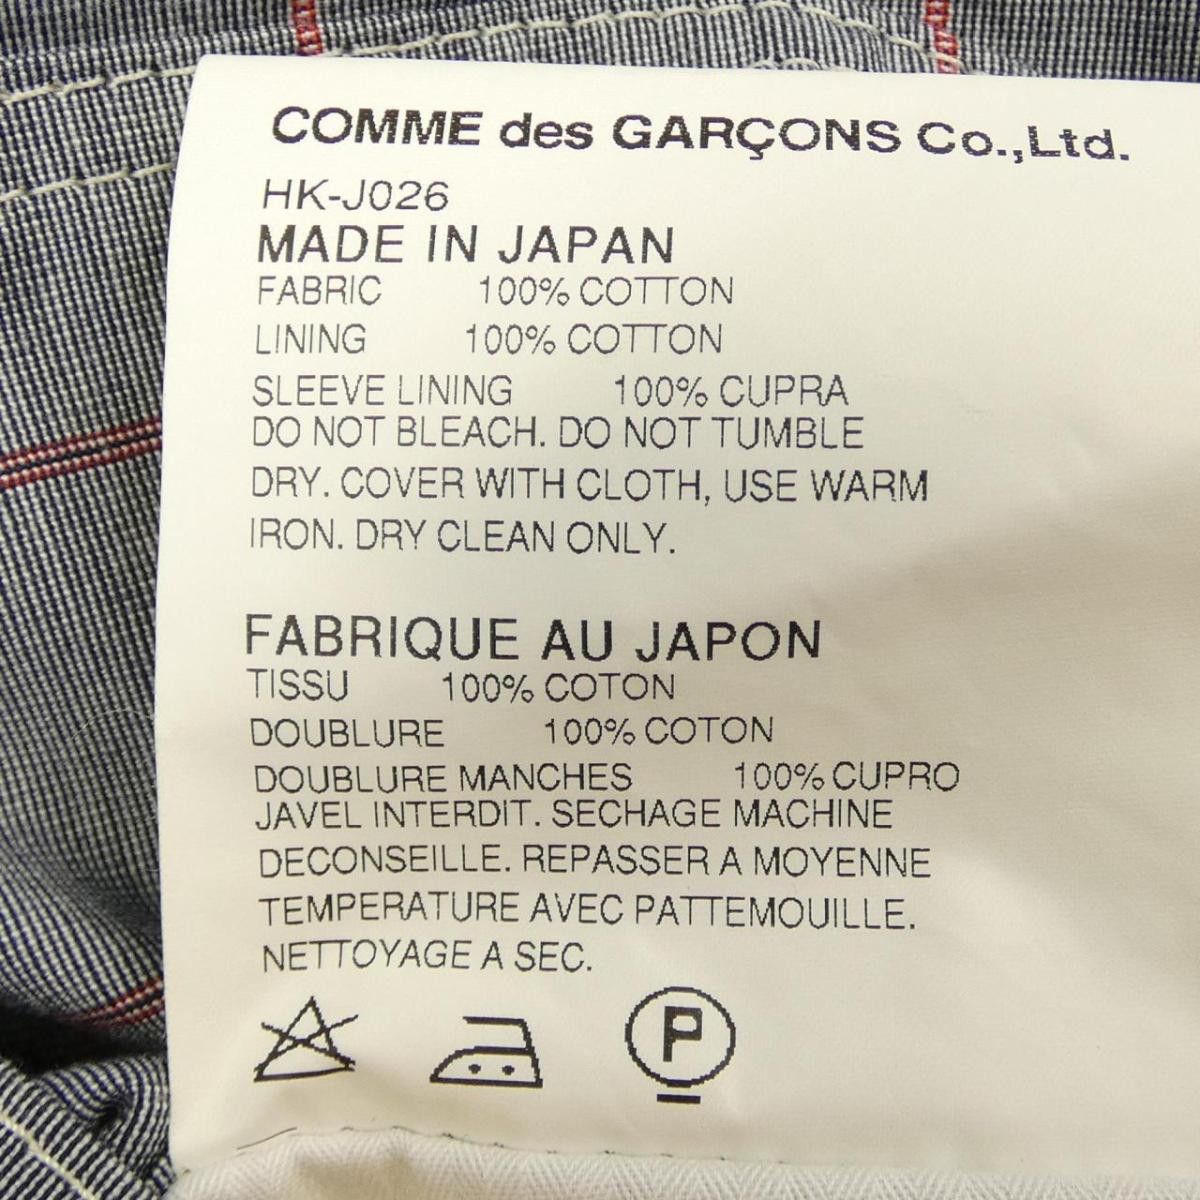 Comme des Garcons Homme Jacket Blue Overall Pattern Cotton Parka Size US S / EU 44-46 / 1 - 3 Thumbnail